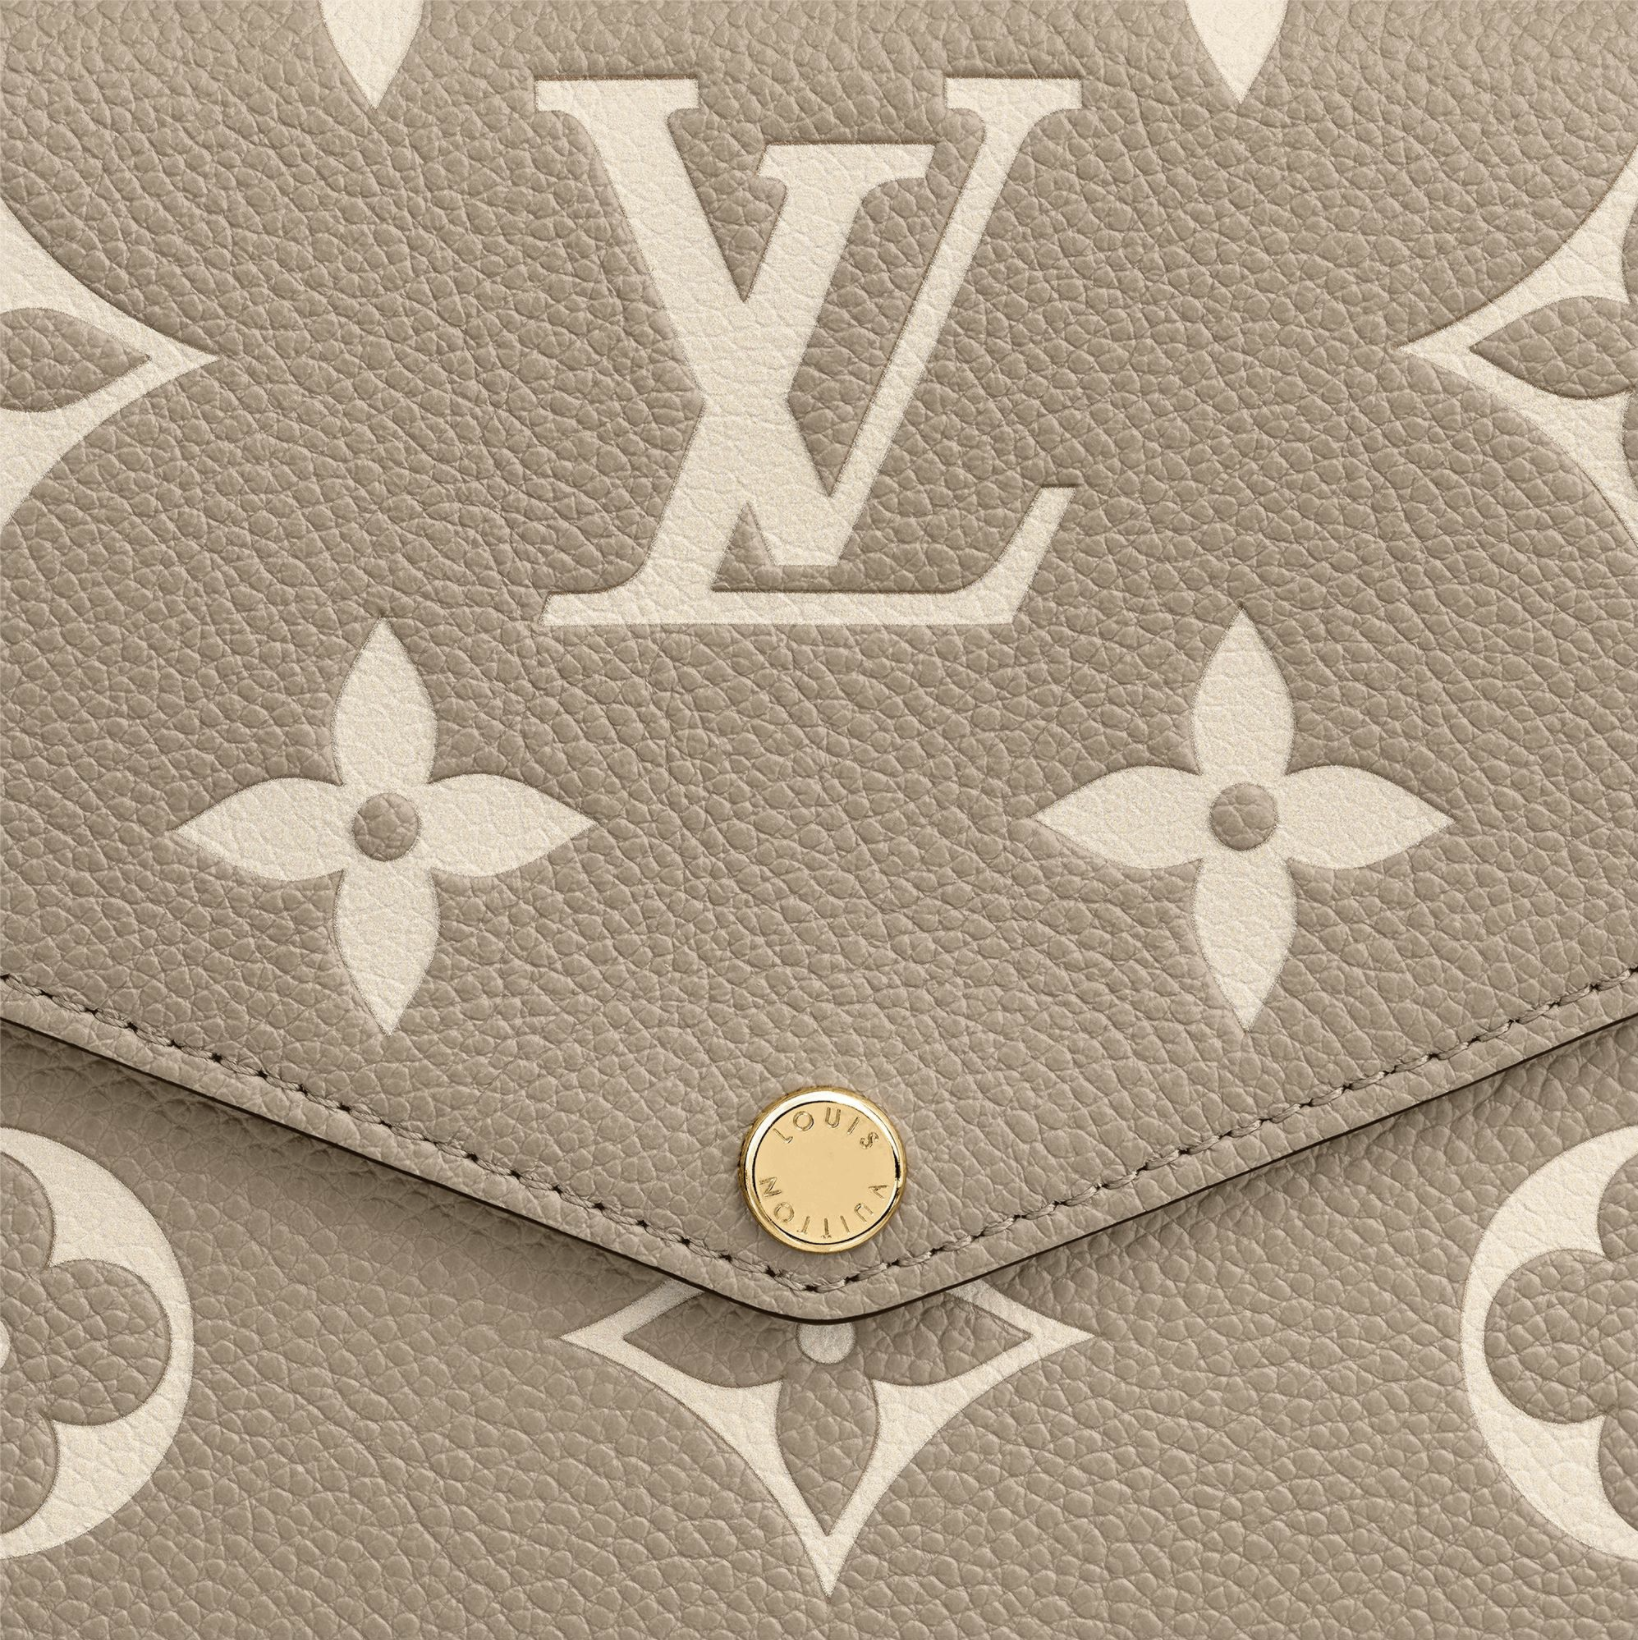 Louis Vuitton Pochette Felicie M80498– TC